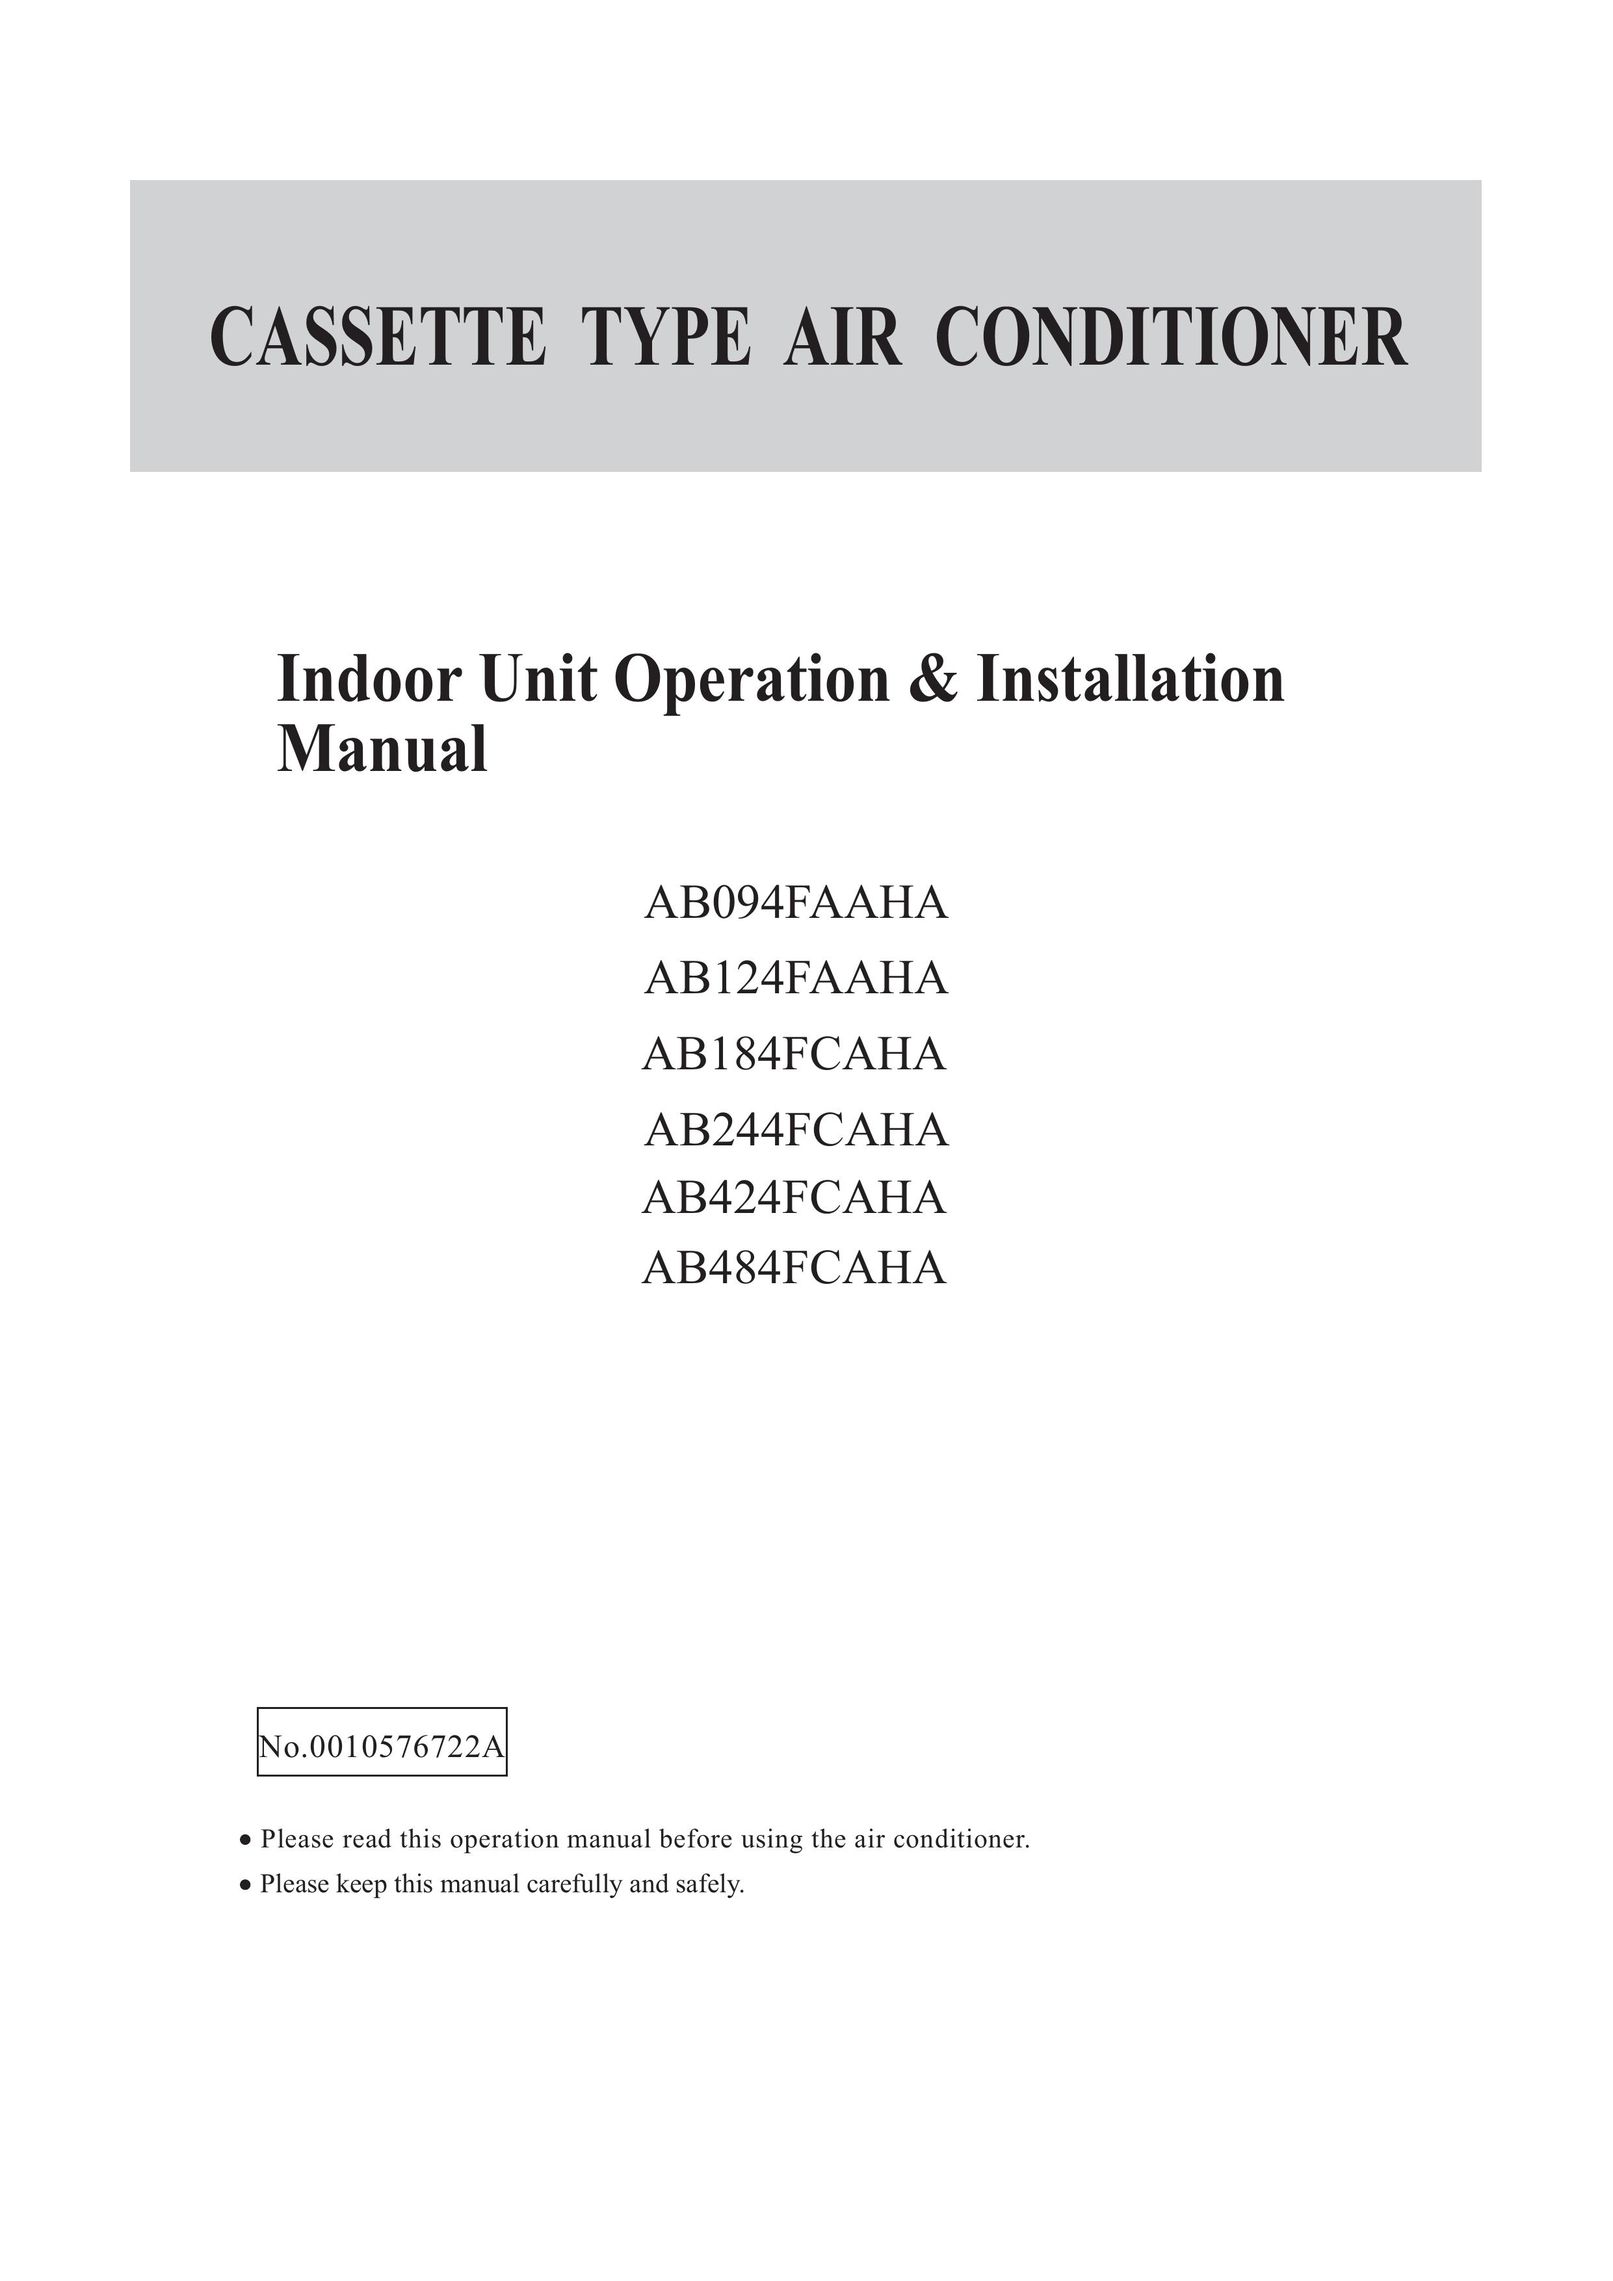 Haier AB124FAAHA Air Conditioner User Manual